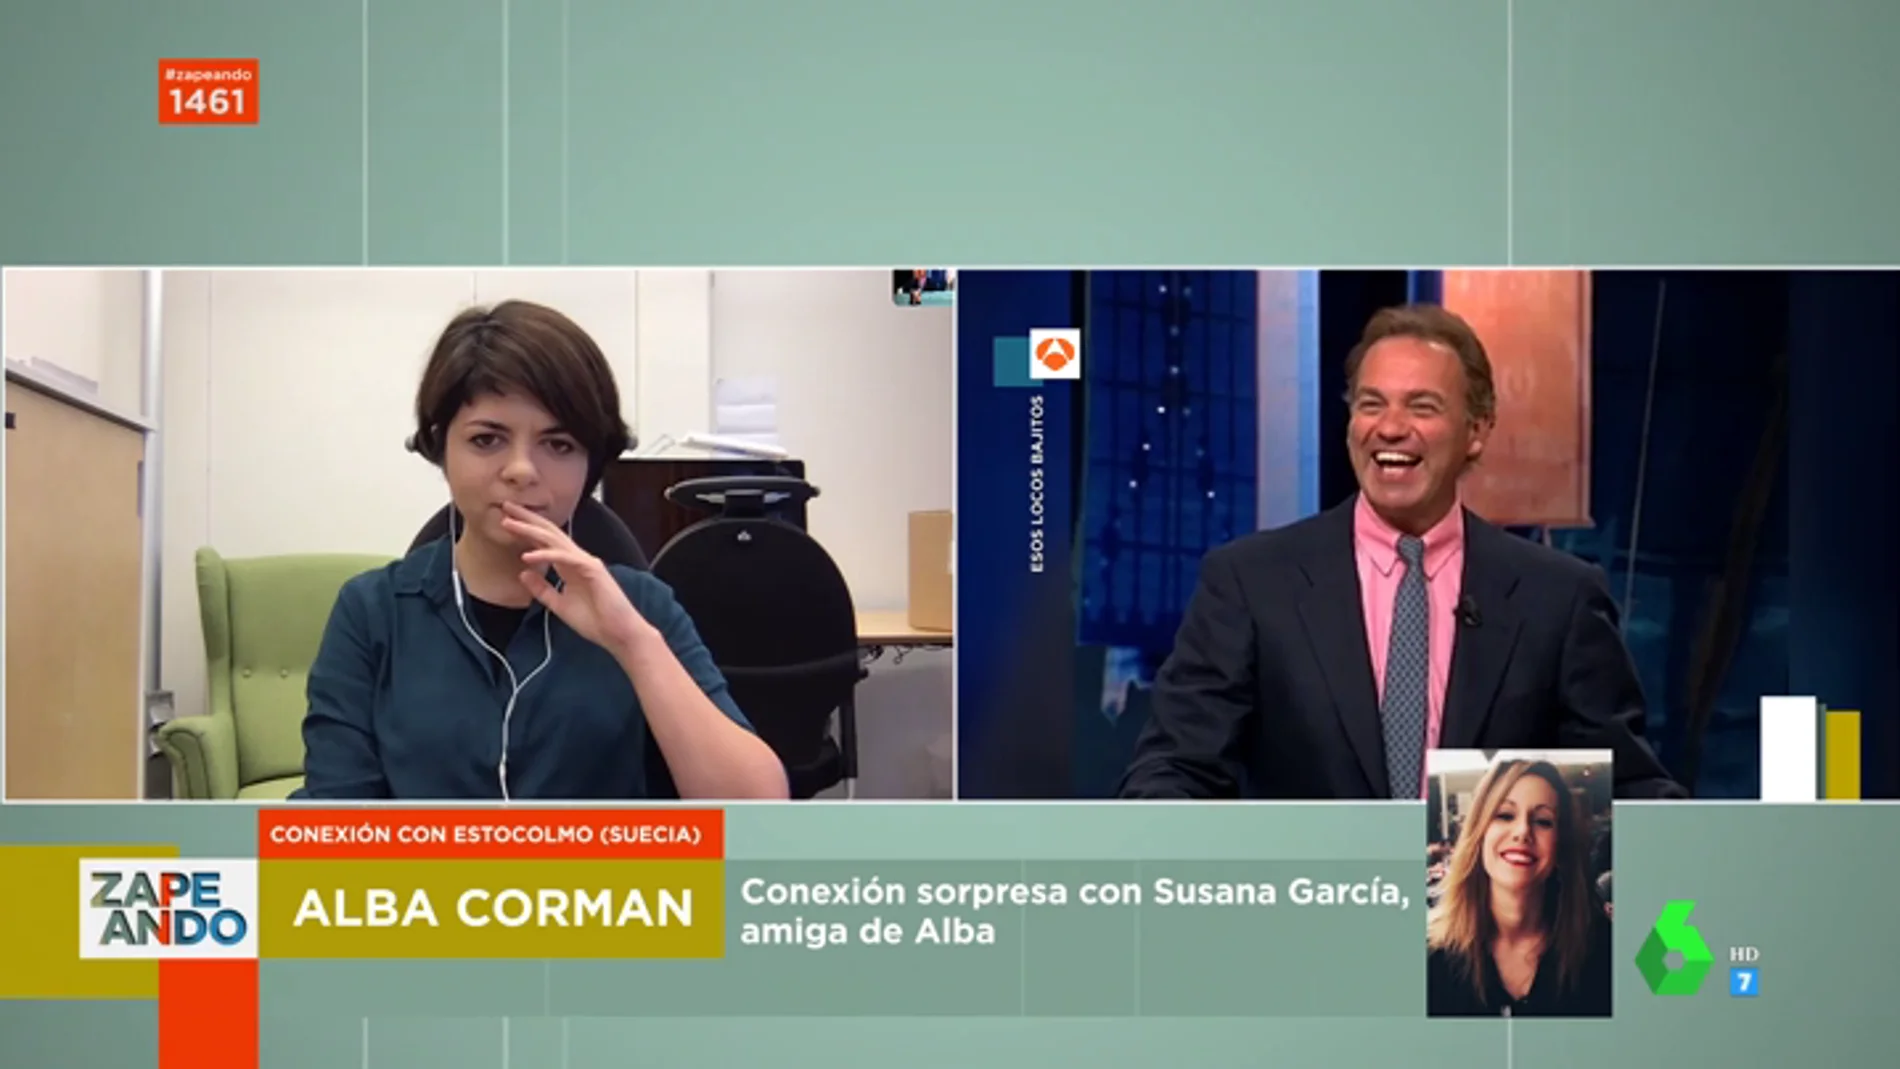 Zapeando entrevista a Alba Corman